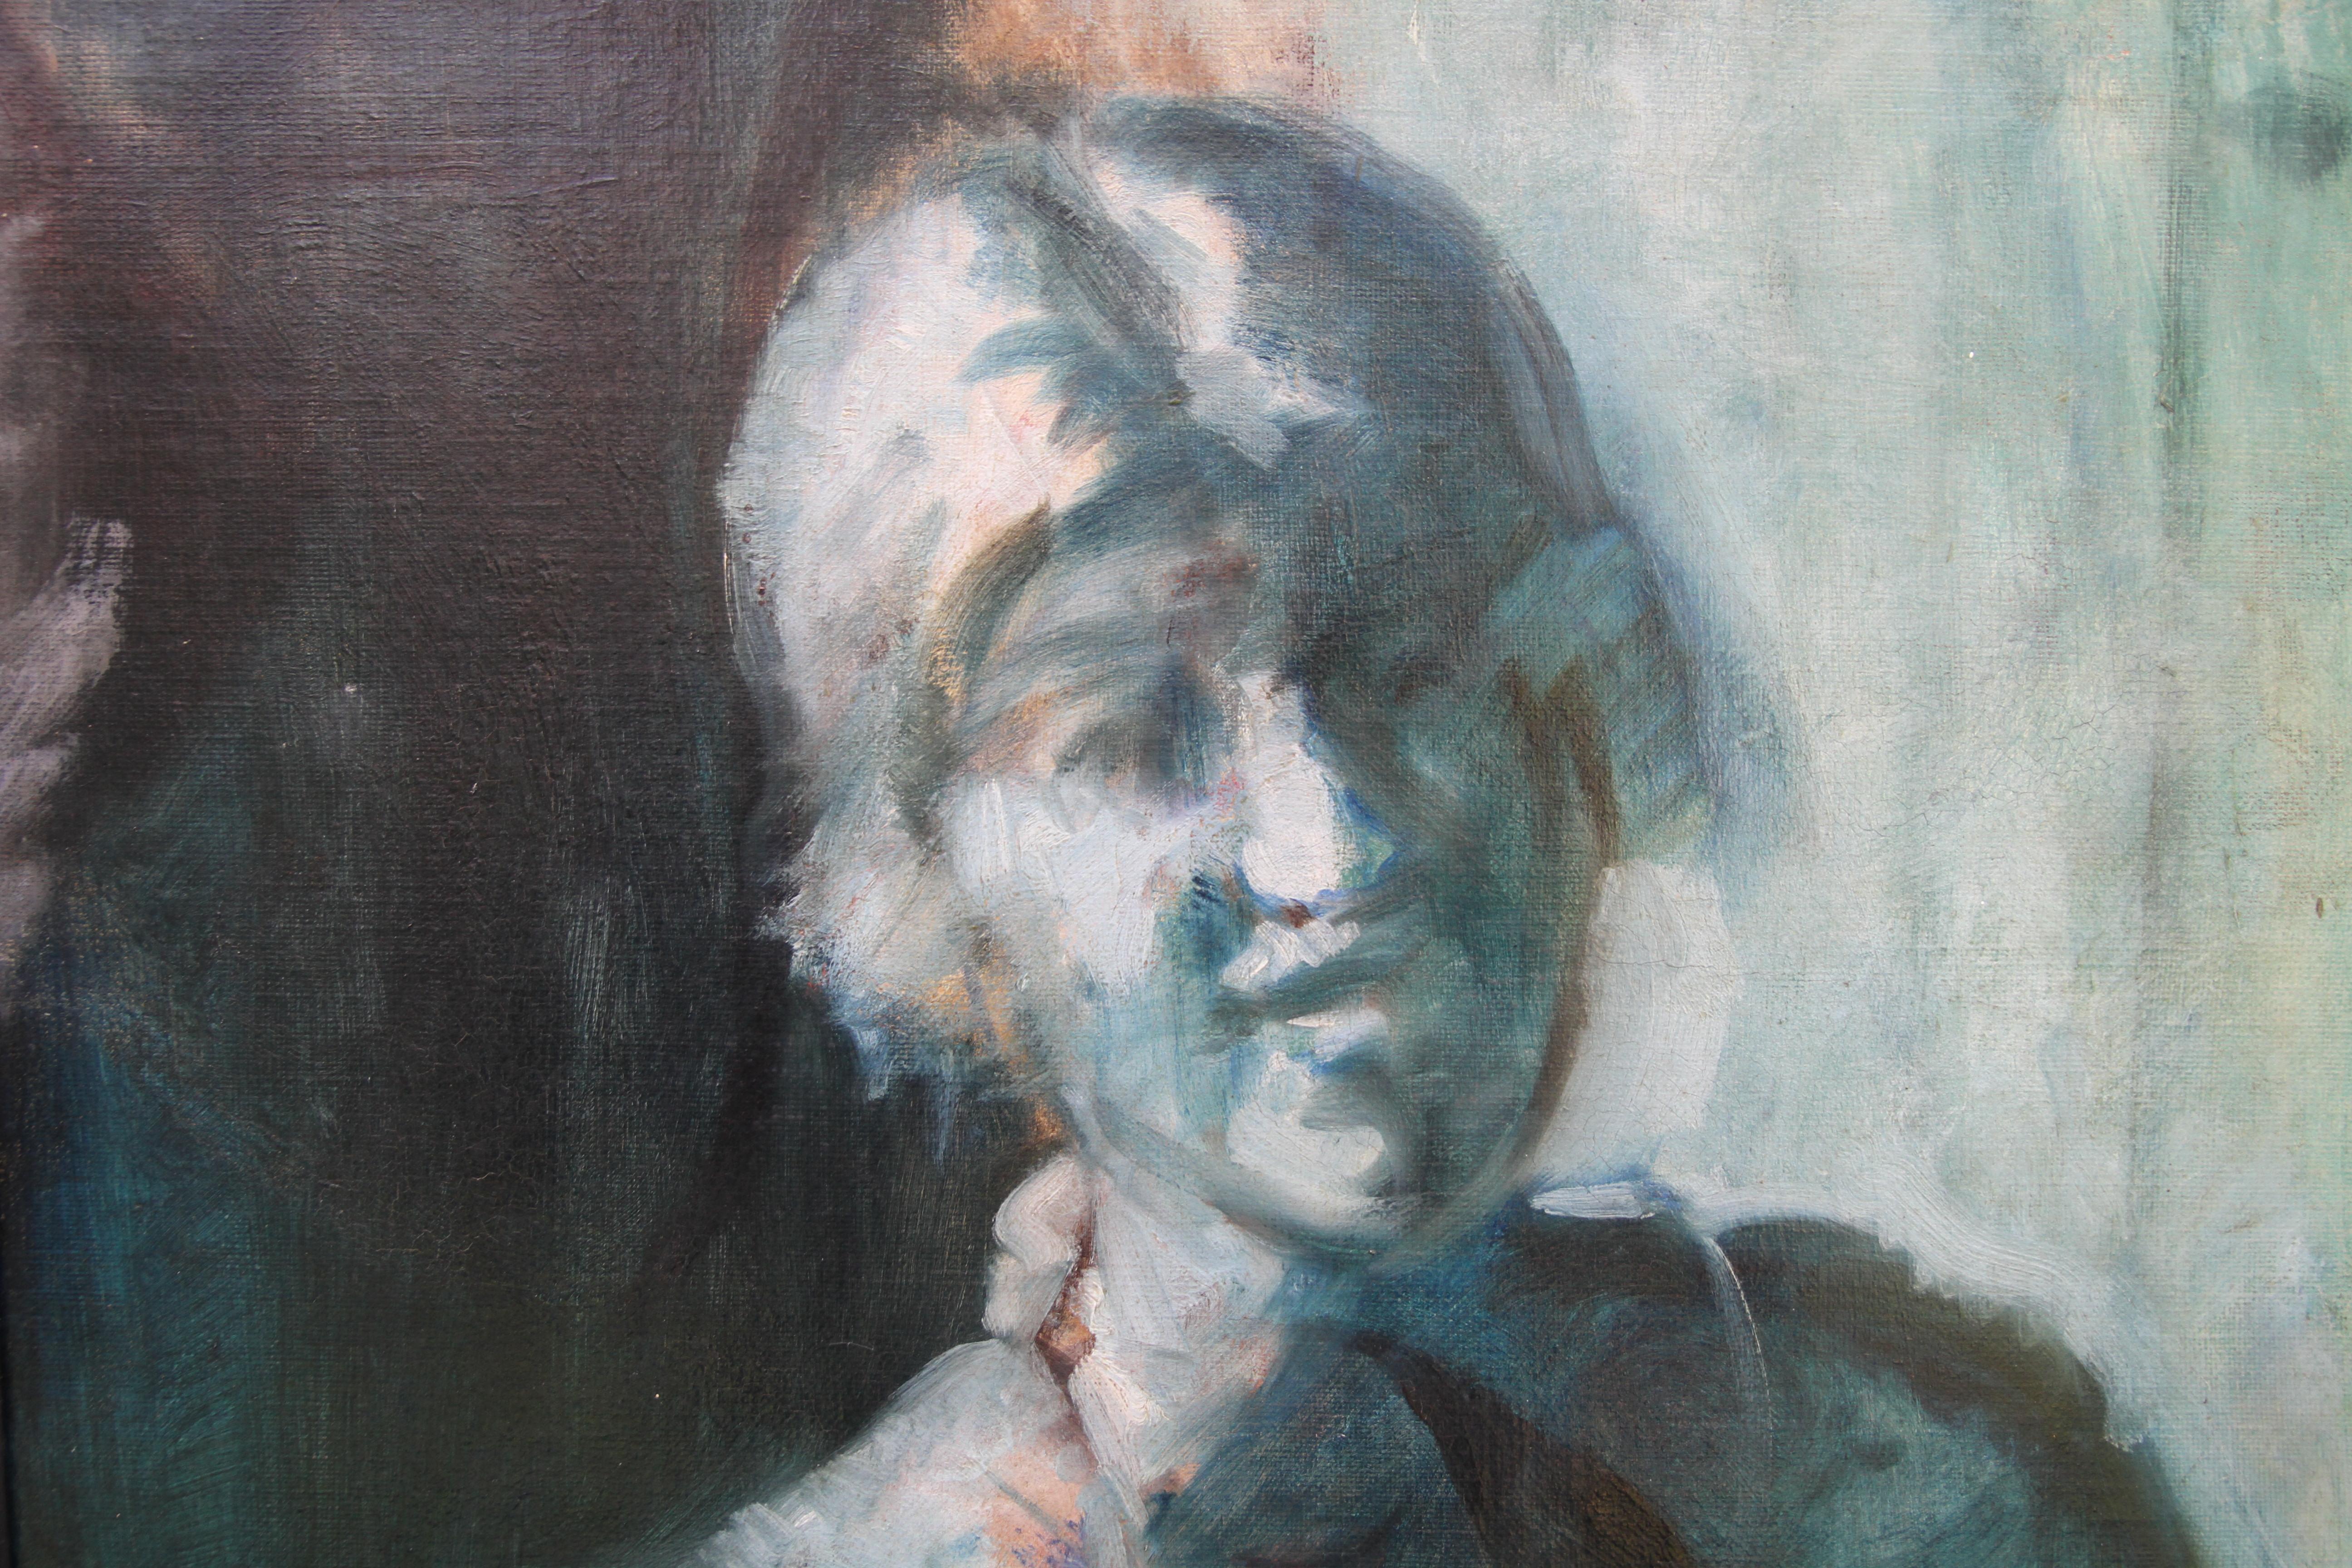 Porträt einer Frau - Blau - Britisches edwardianisches impressionistisches Ölgemälde  (Impressionismus), Painting, von Philip Wilson Steer